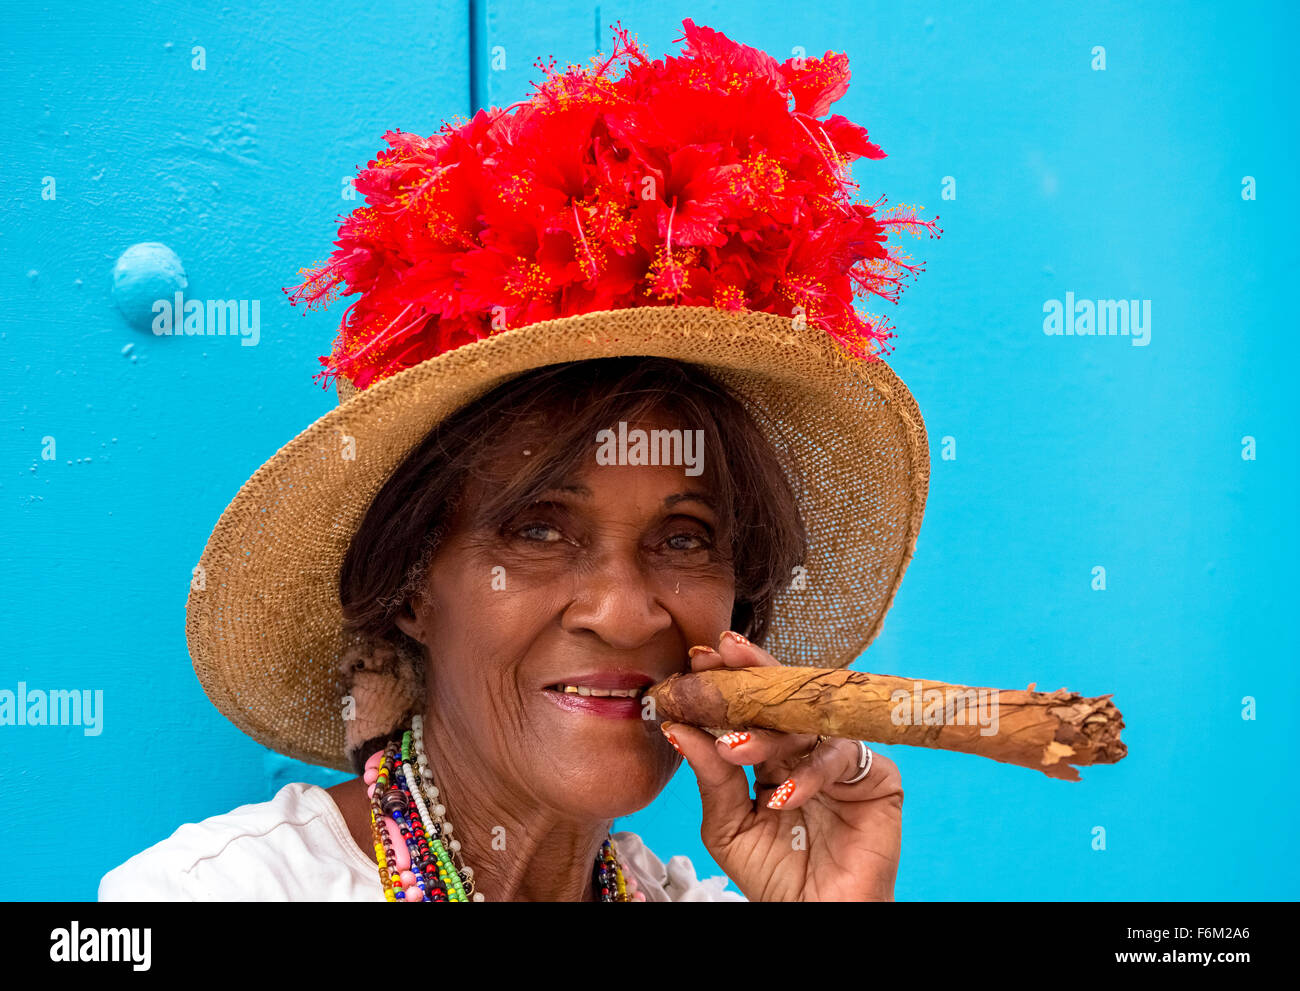 Vecchia donna cubana fuma sulla strada di un sigaro cubano e post con il suo gatto per i turisti, Cuba, Nord America, Caraibi Foto Stock